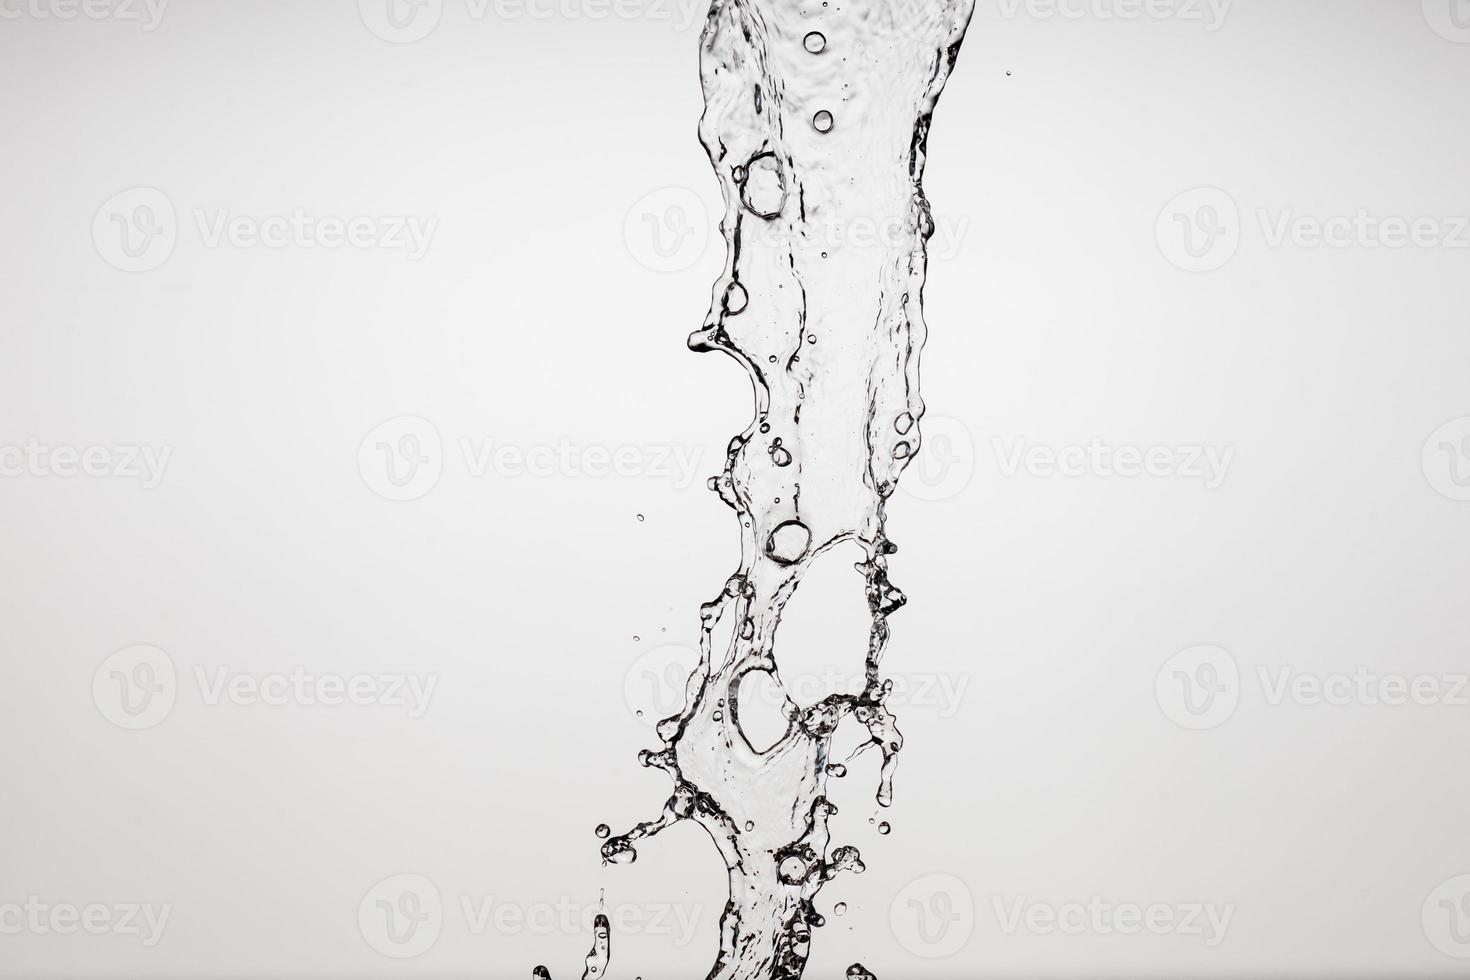 faller vatten på en vit bakgrund foto